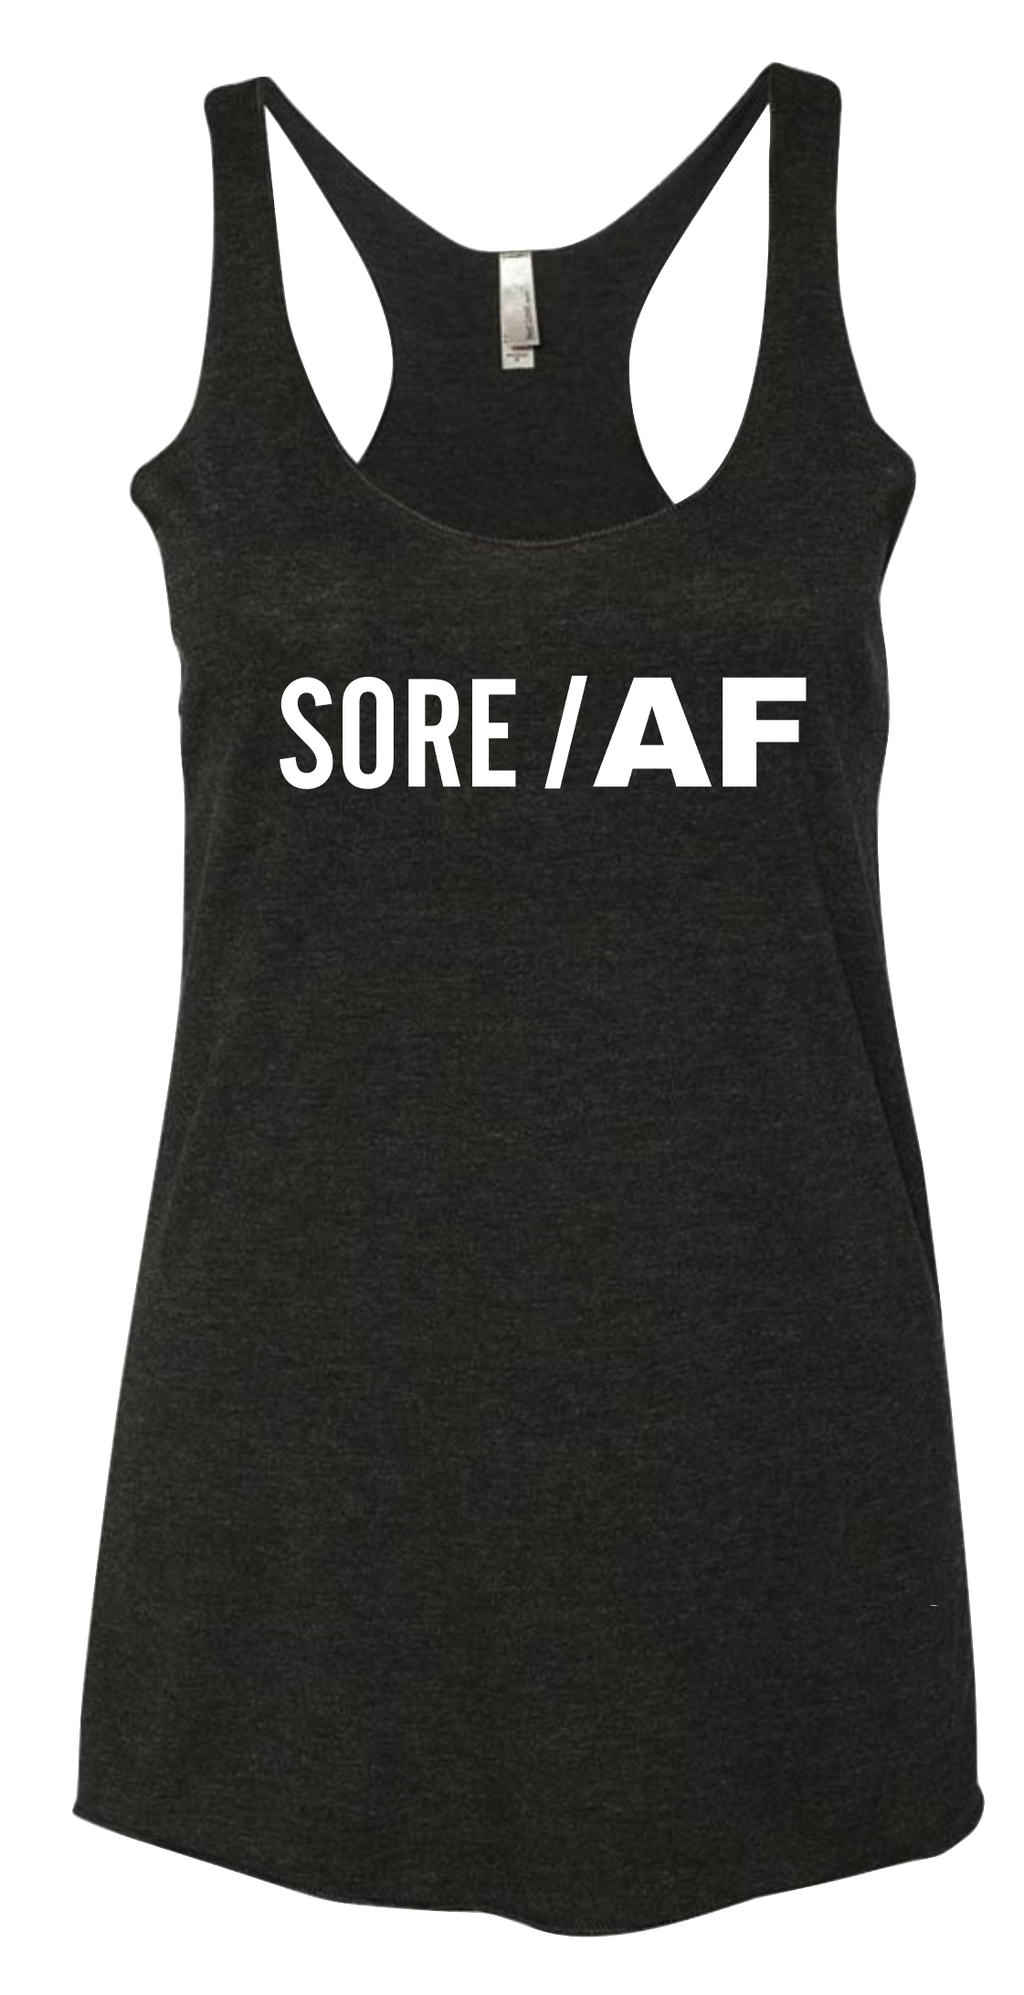 Sore/ AF Tee Shirt Black Racerback